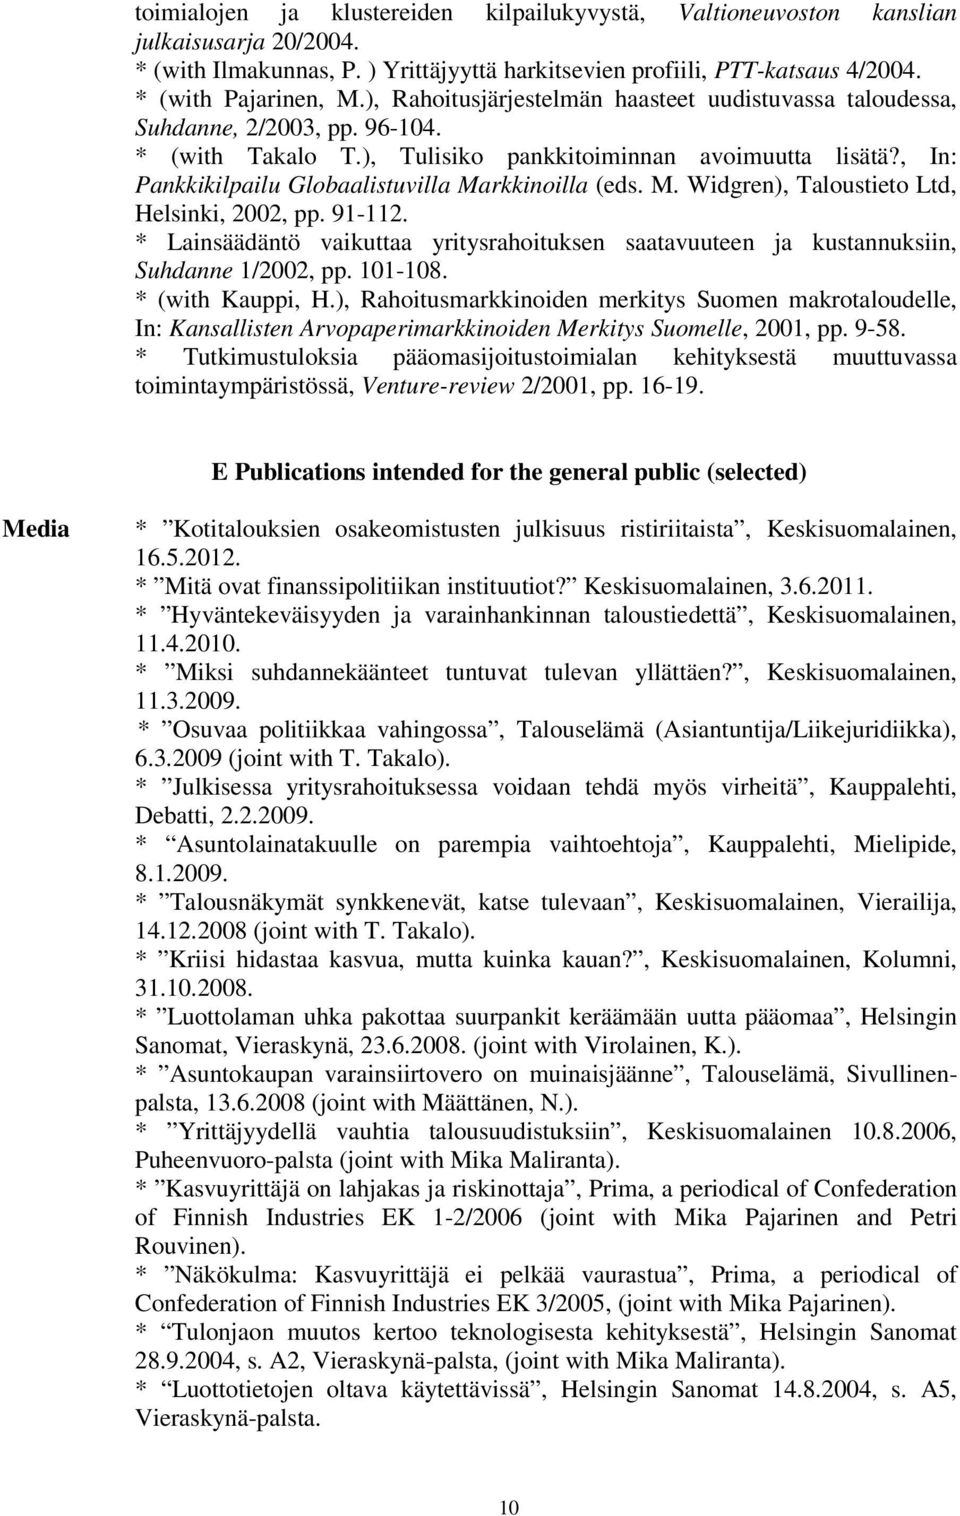 , In: Pankkikilpailu Globaalistuvilla Markkinoilla (eds. M. Widgren), Taloustieto Ltd, Helsinki, 2002, pp. 91-112.